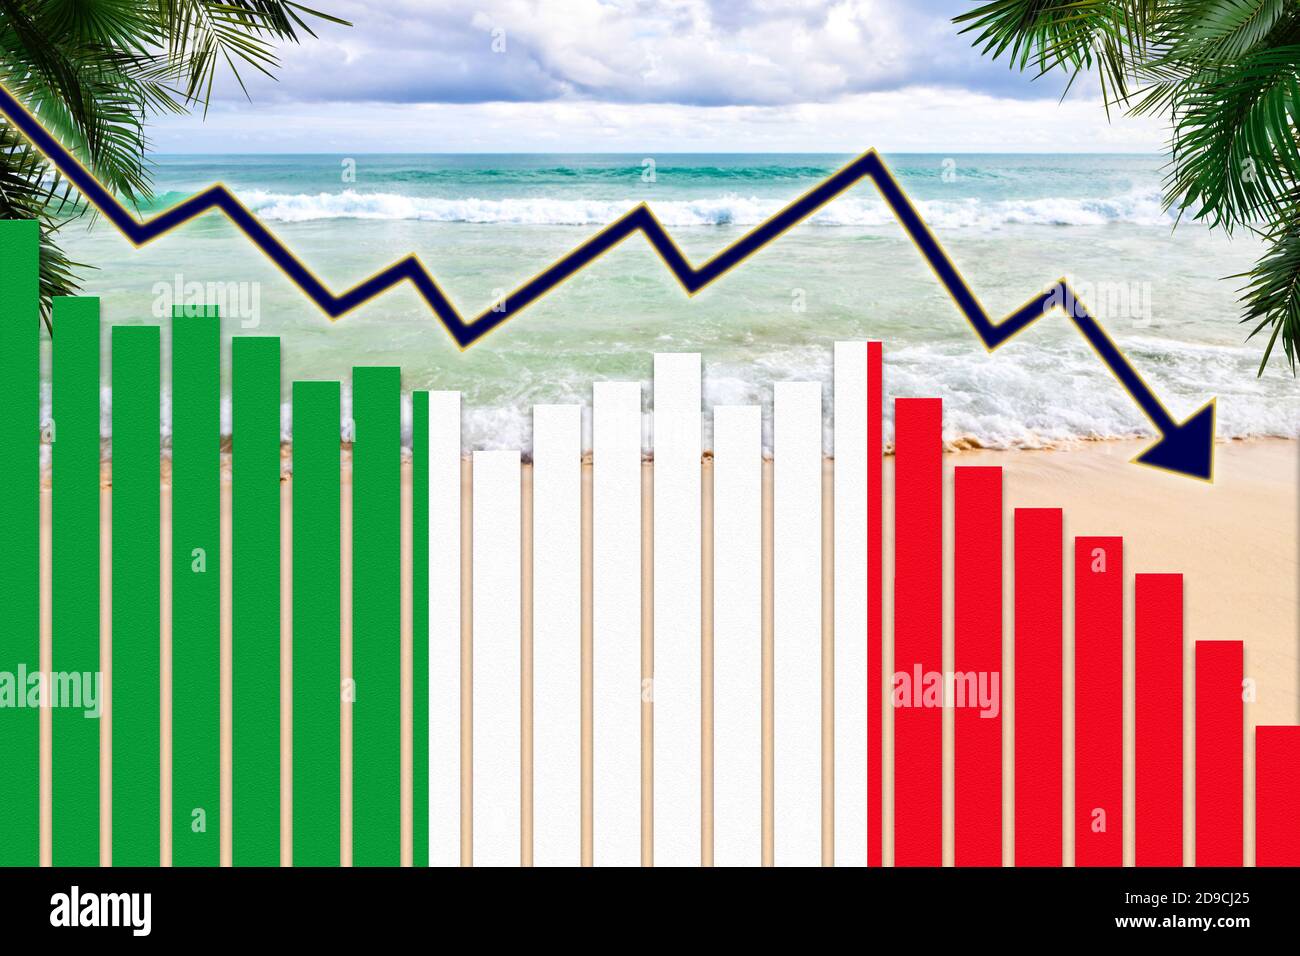 COVID-19 coronavirus pandemico impatto sul concetto di industria turistica in Italia che mostra il background della spiaggia con la bandiera italiana sulla barra carte tendenza in calo. Foto Stock